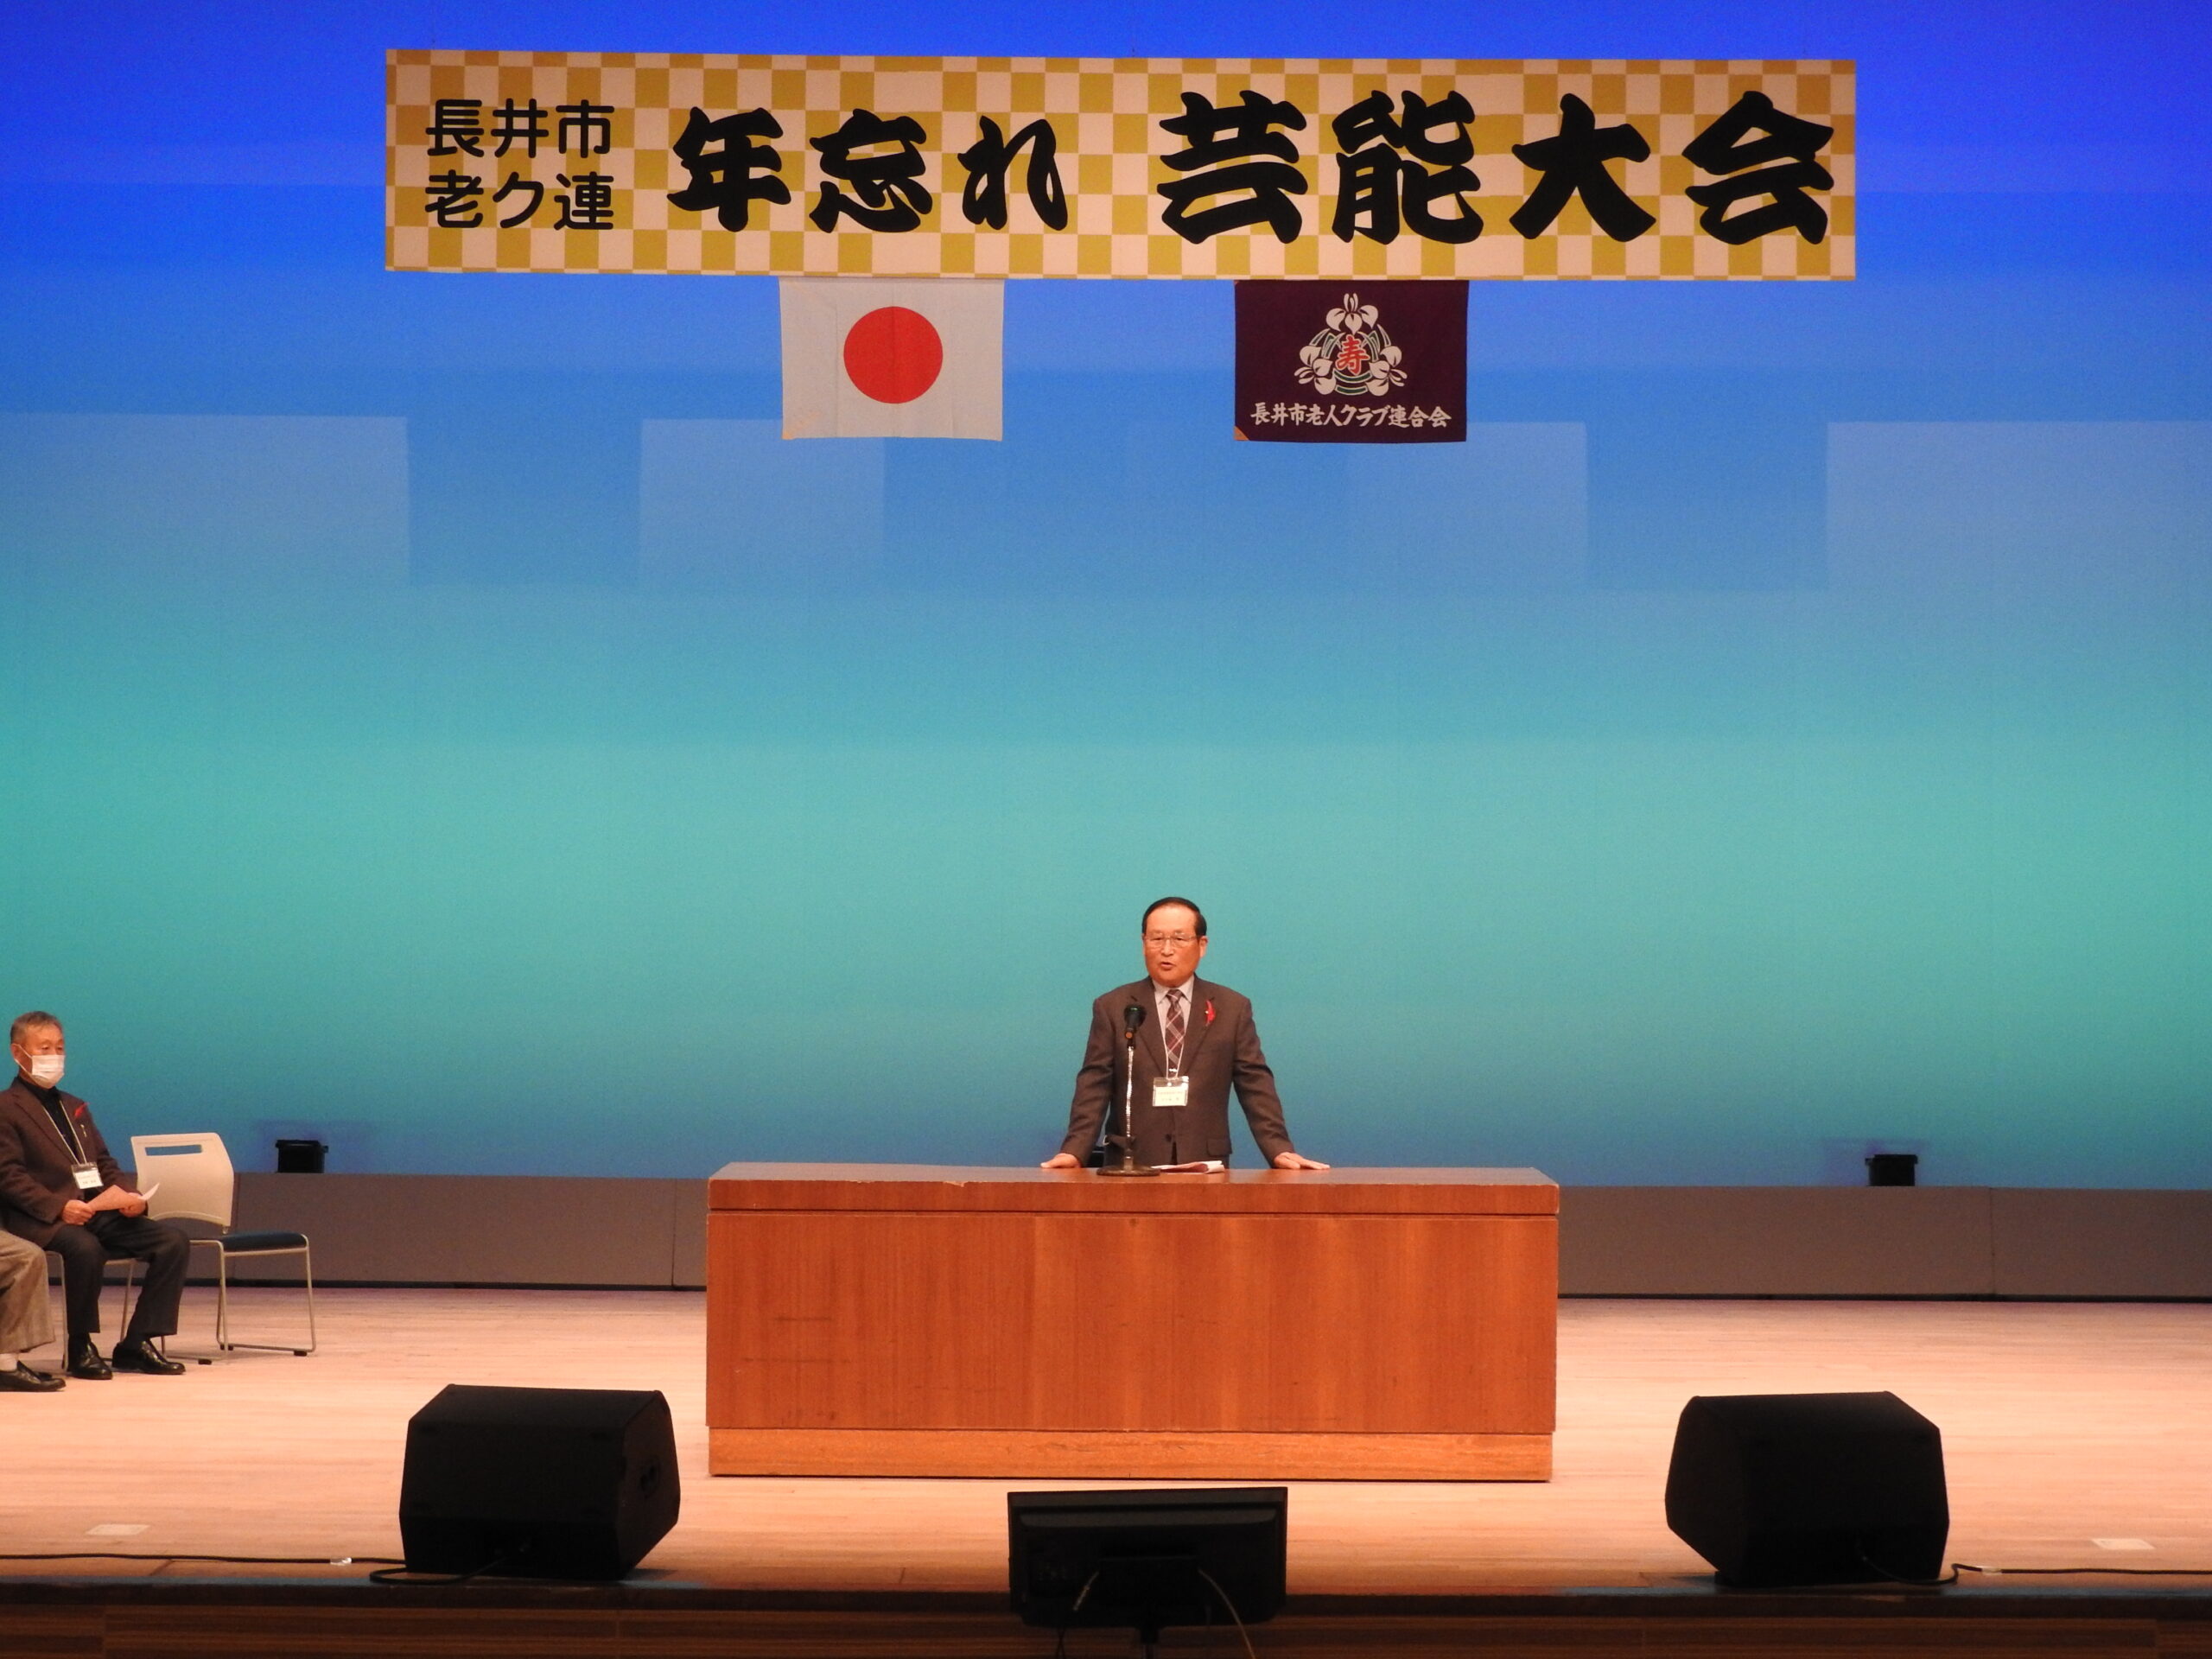 第42回長井市老人クラブ連合会年忘れ芸能発表会を開催しました。